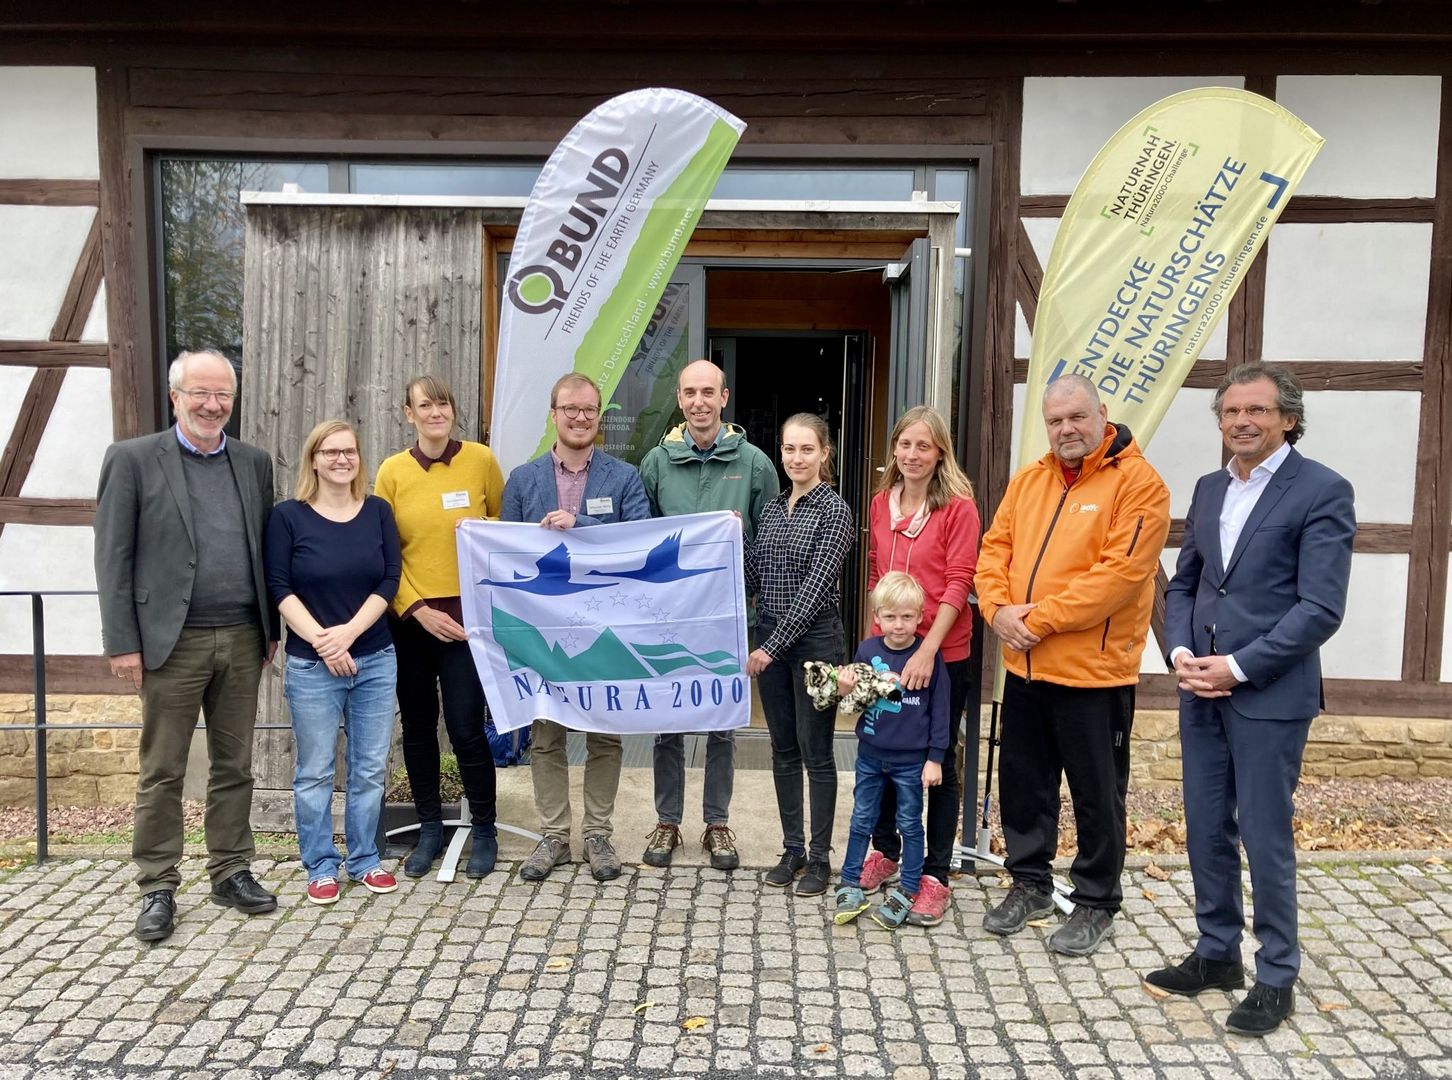 Prämierungsfeier der Natura 2000-Challenge